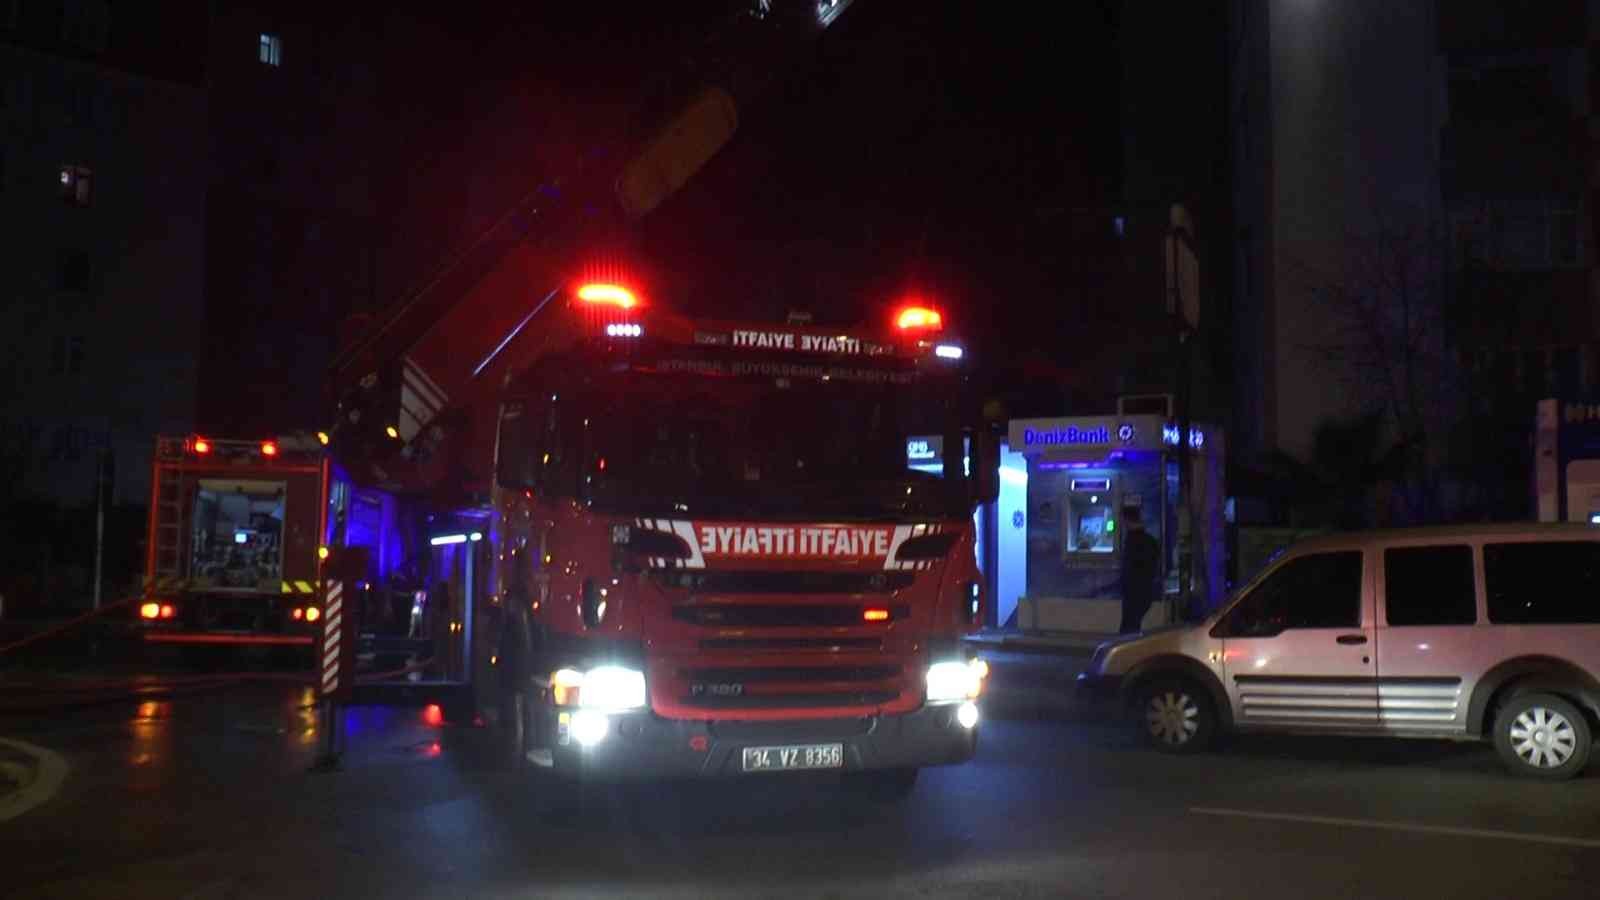 Kartal’da yeni yılın ilk saatinde yangın paniği #istanbul